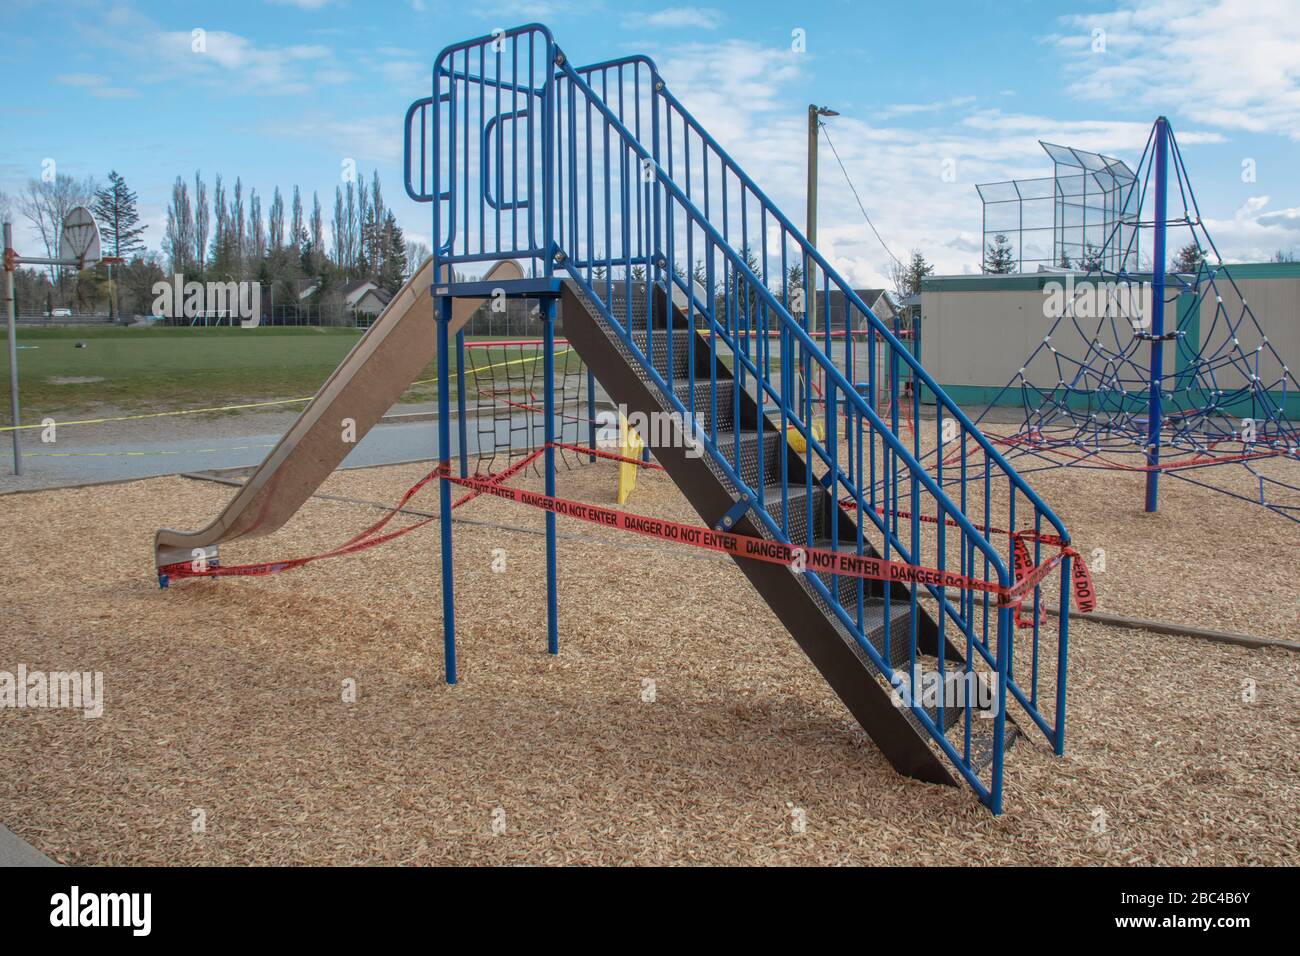 Der örtliche Spielplatz und der Park der Grundschule schlossen aufgrund der Bündnisgesetze 19 und neuer Gesetze zur sozialen Distanzierung ab Stockfoto